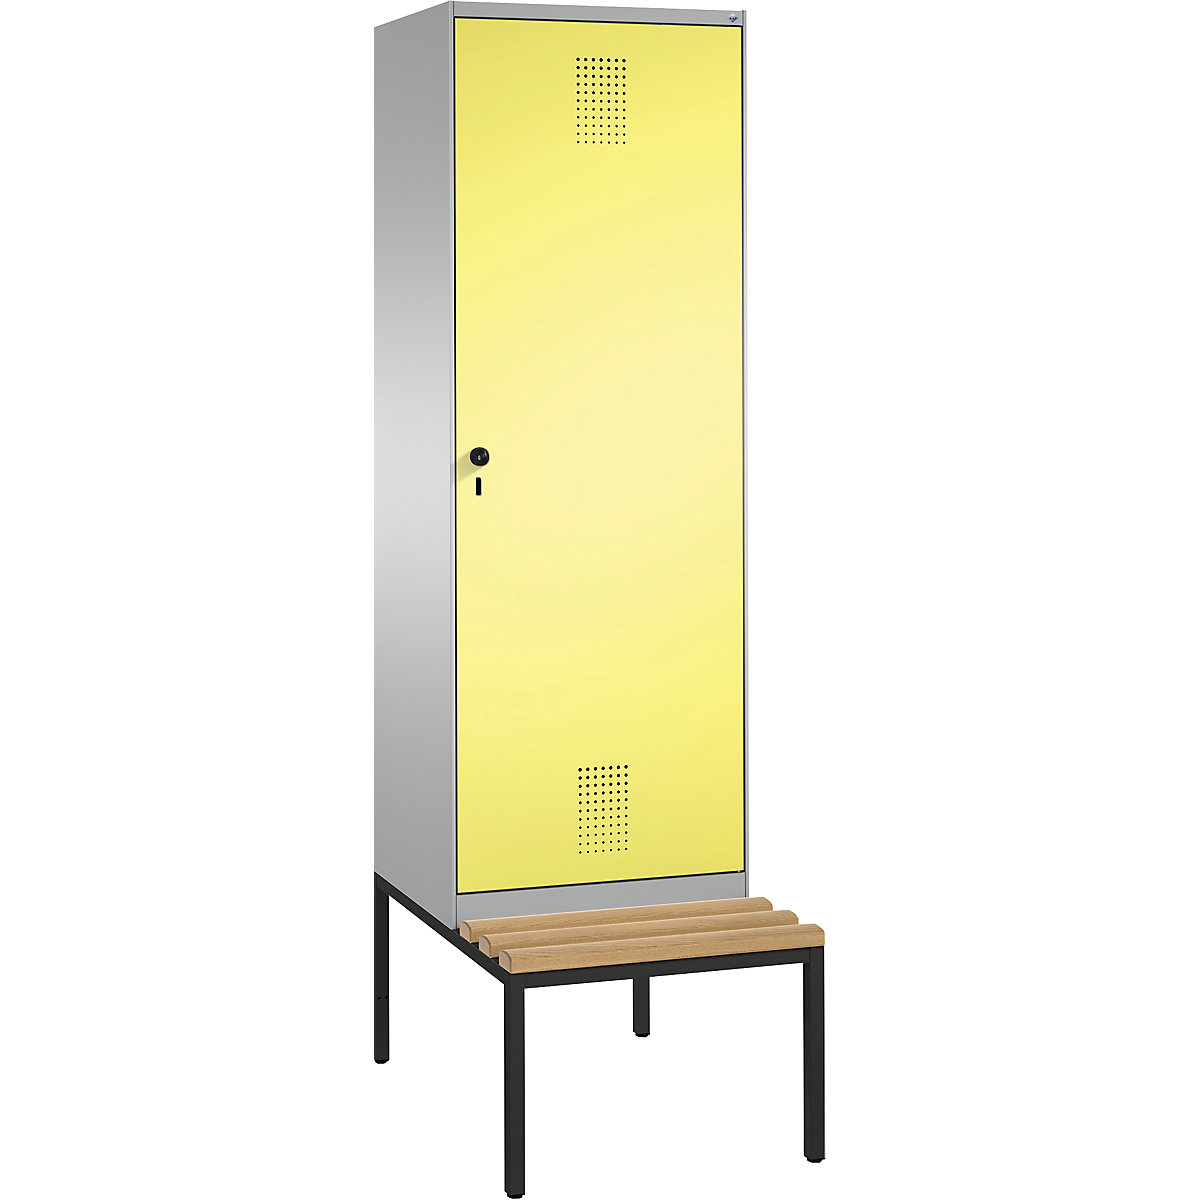 EVOLO Garderobenschrank, mit Sitzbank, Tür über 2 Abteile C+P, 2 Abteile, 1 Tür, Abteilbreite 300 mm, weißaluminium / schwefelgelb-2